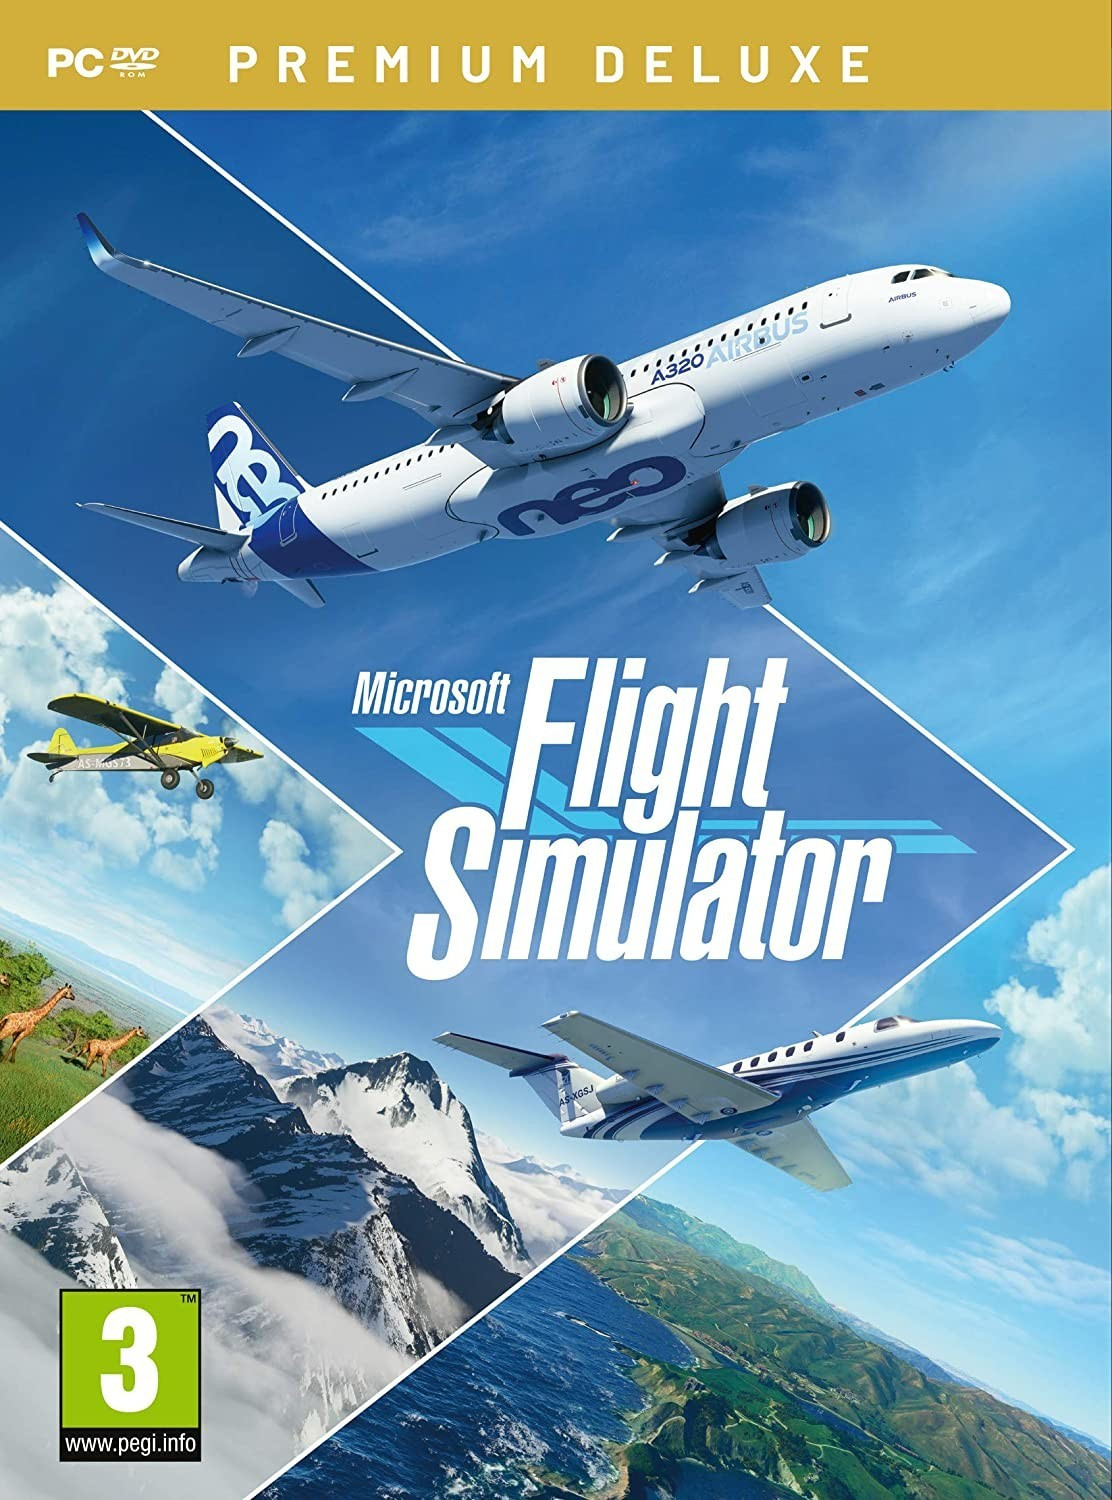 Photos - Game Asobo Studio Microsoft Flight Simulator : Premium Deluxe Edition (PC) 2020